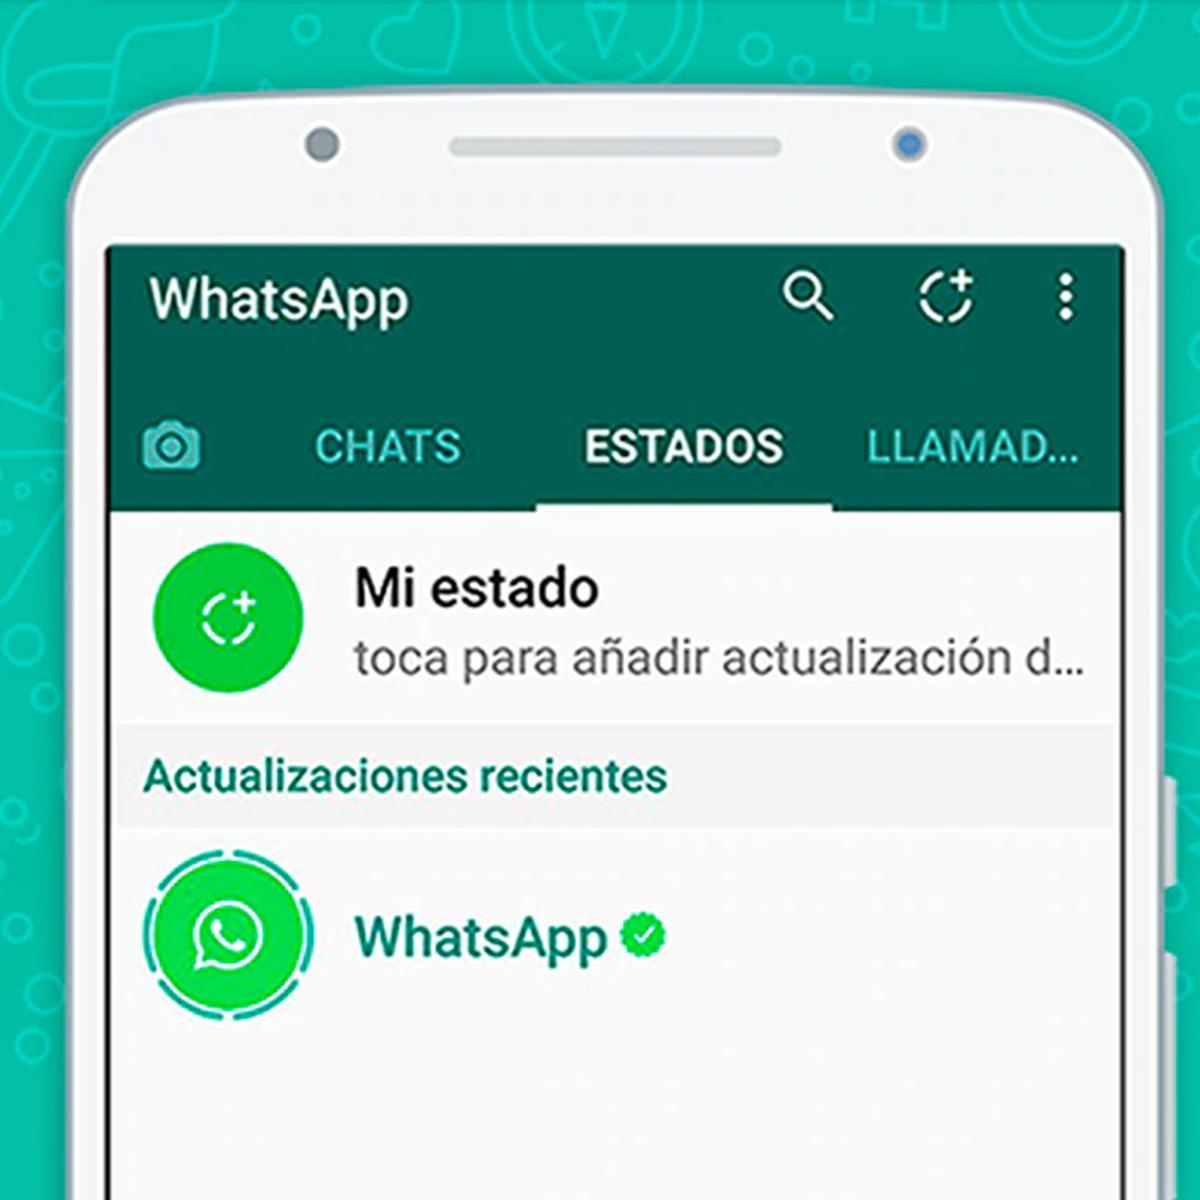 Las actualizaciones de estado de WhatsApp podrían aparecer pronto dentro de la lista de chats - 1 - mayo 19, 2022